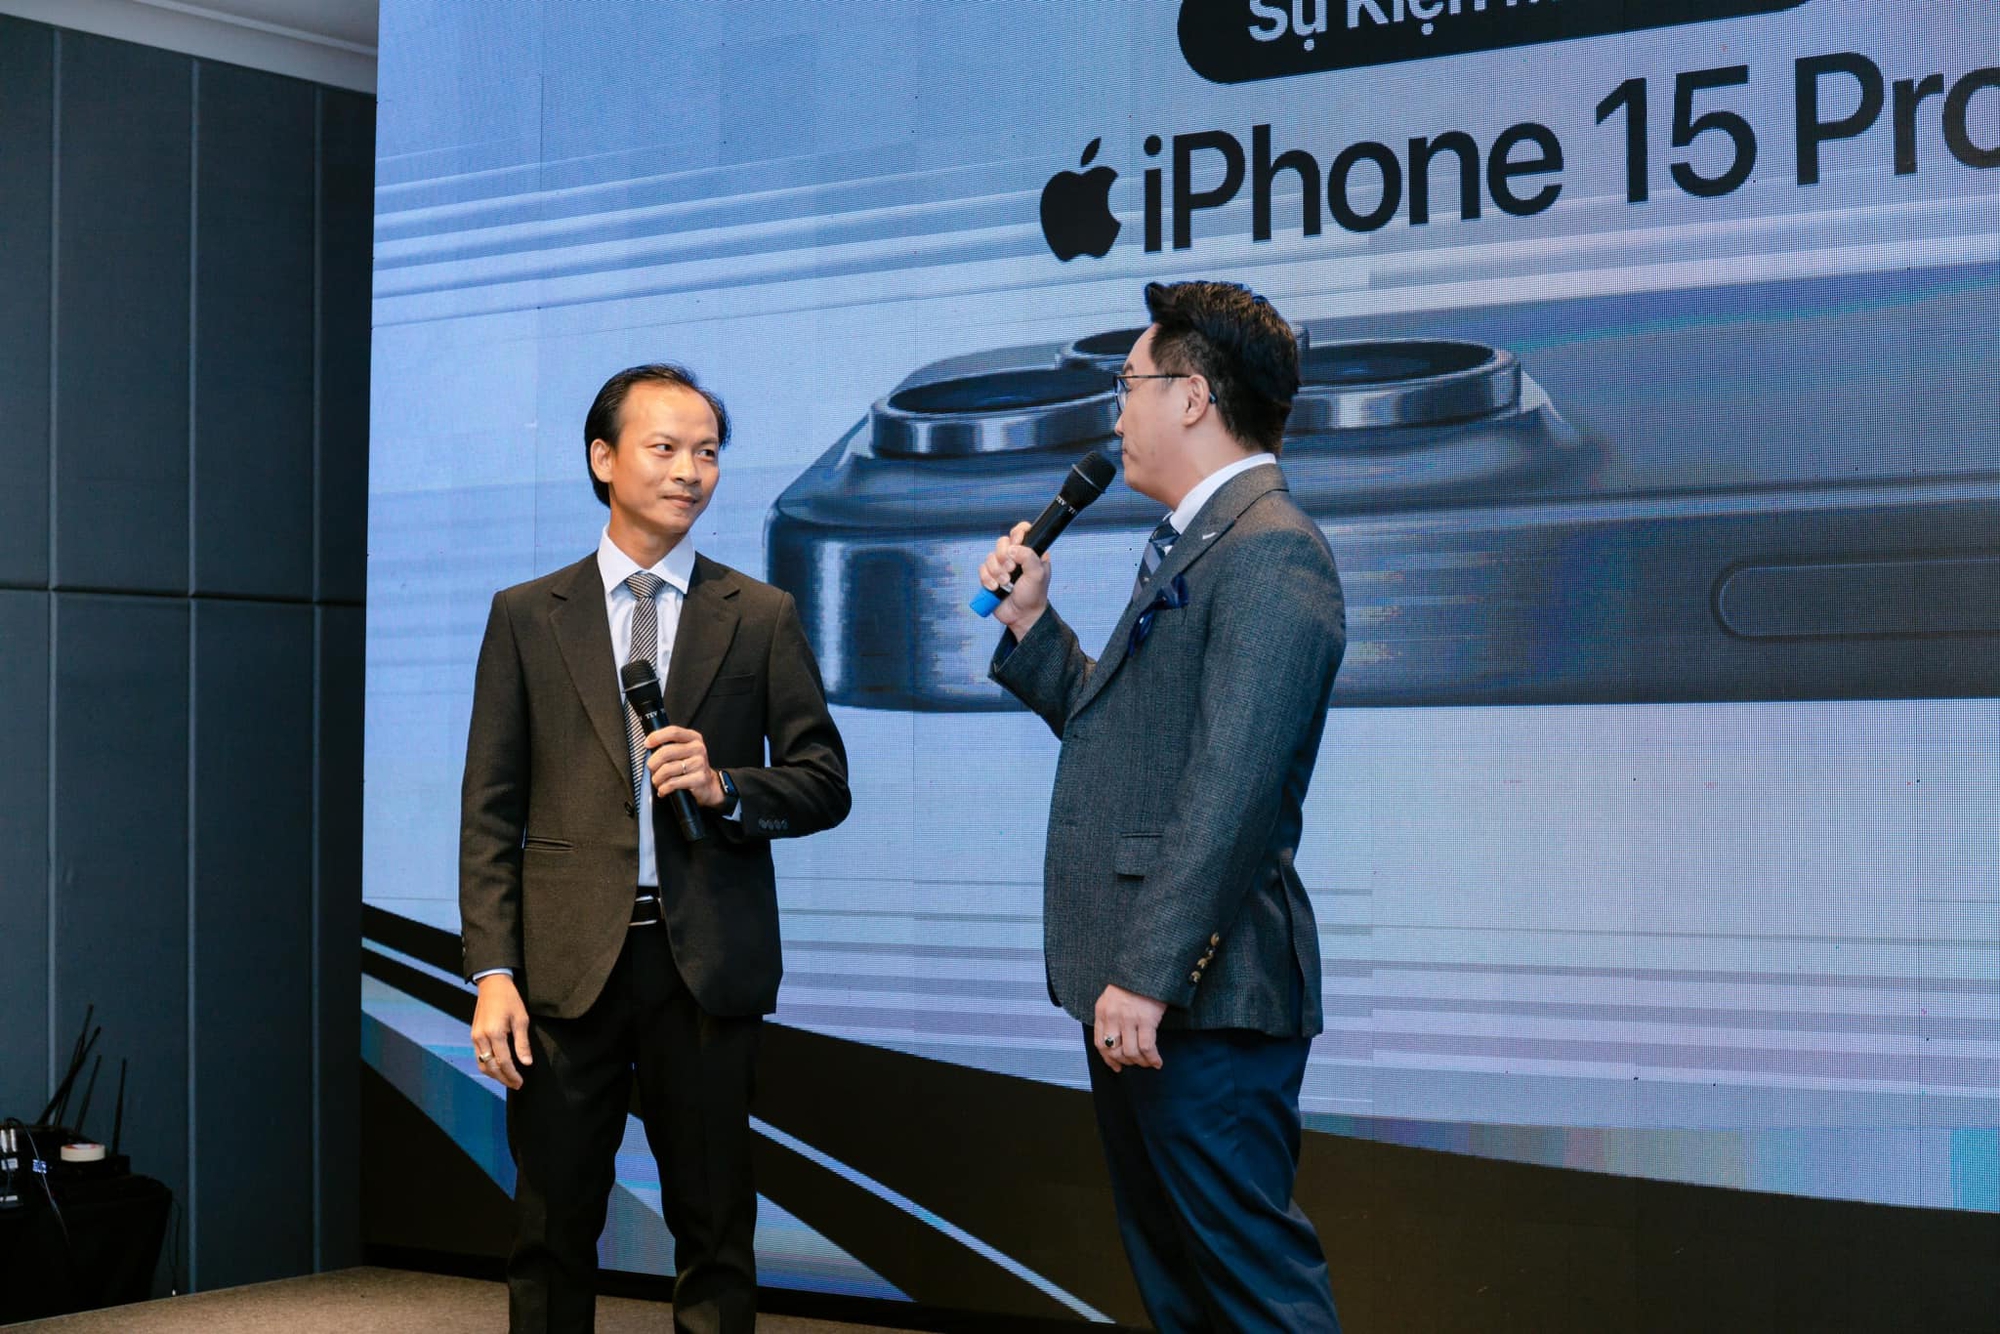 iPhone 15 mở bán ở Việt Nam: Nhiều người mất ngủ xếp hàng từ nửa đêm - Ảnh 1.